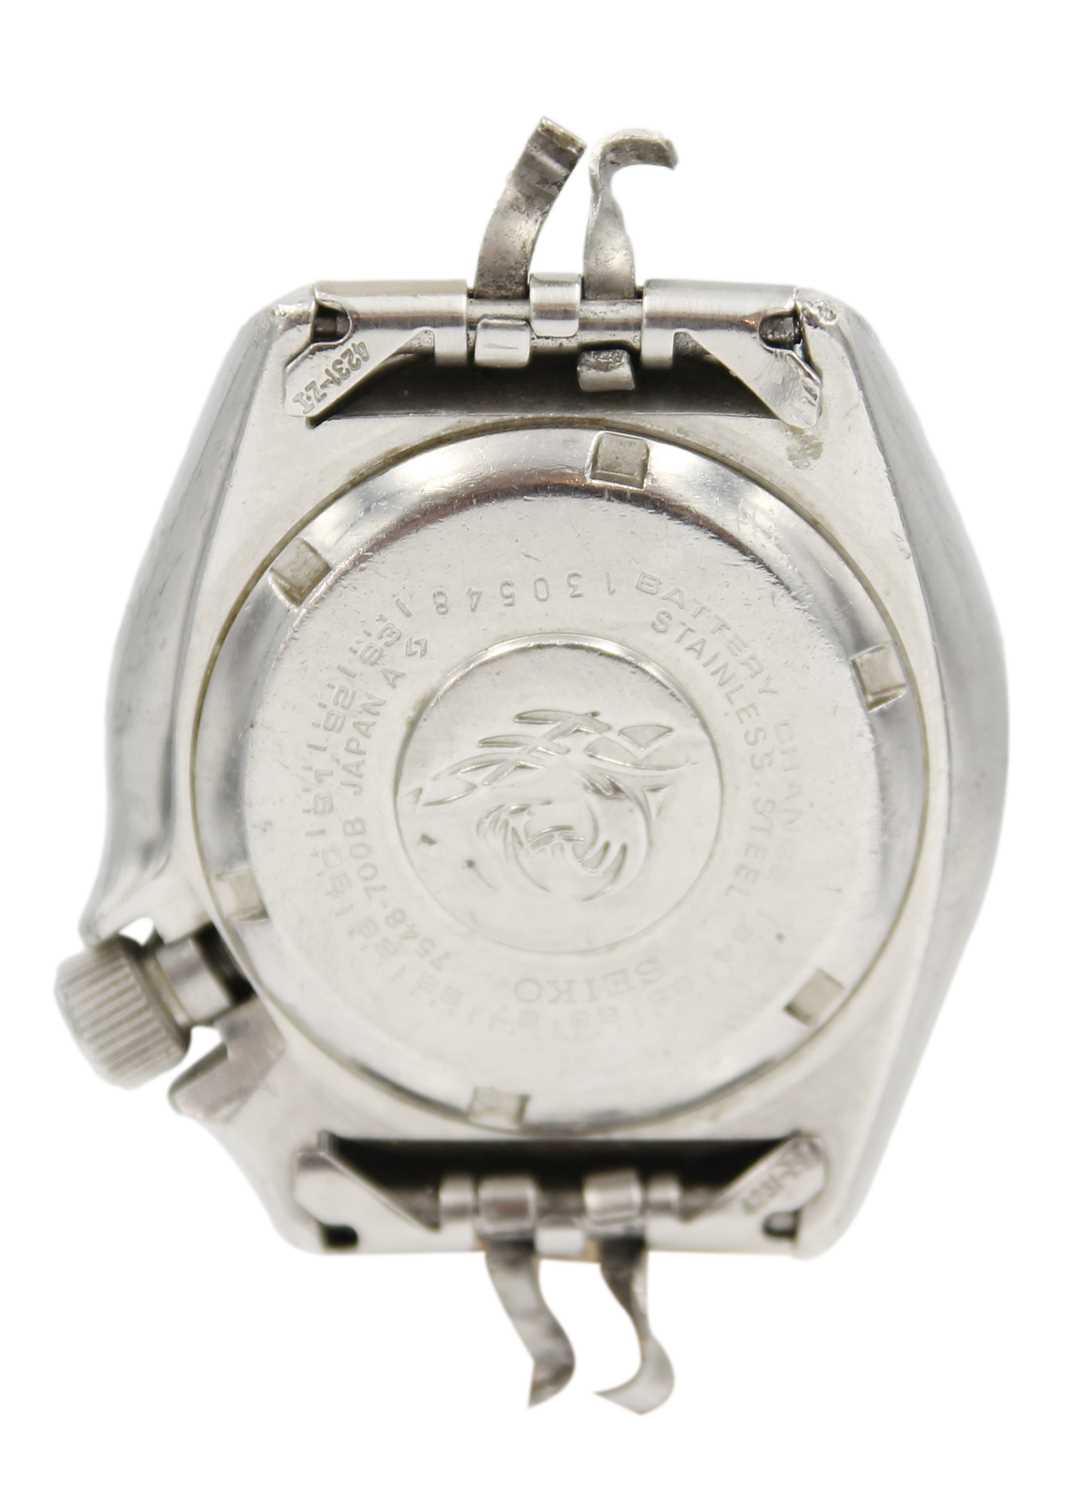 SEIKO - A quartz divers wristwatch, ref. 7548-700B. - Image 3 of 3